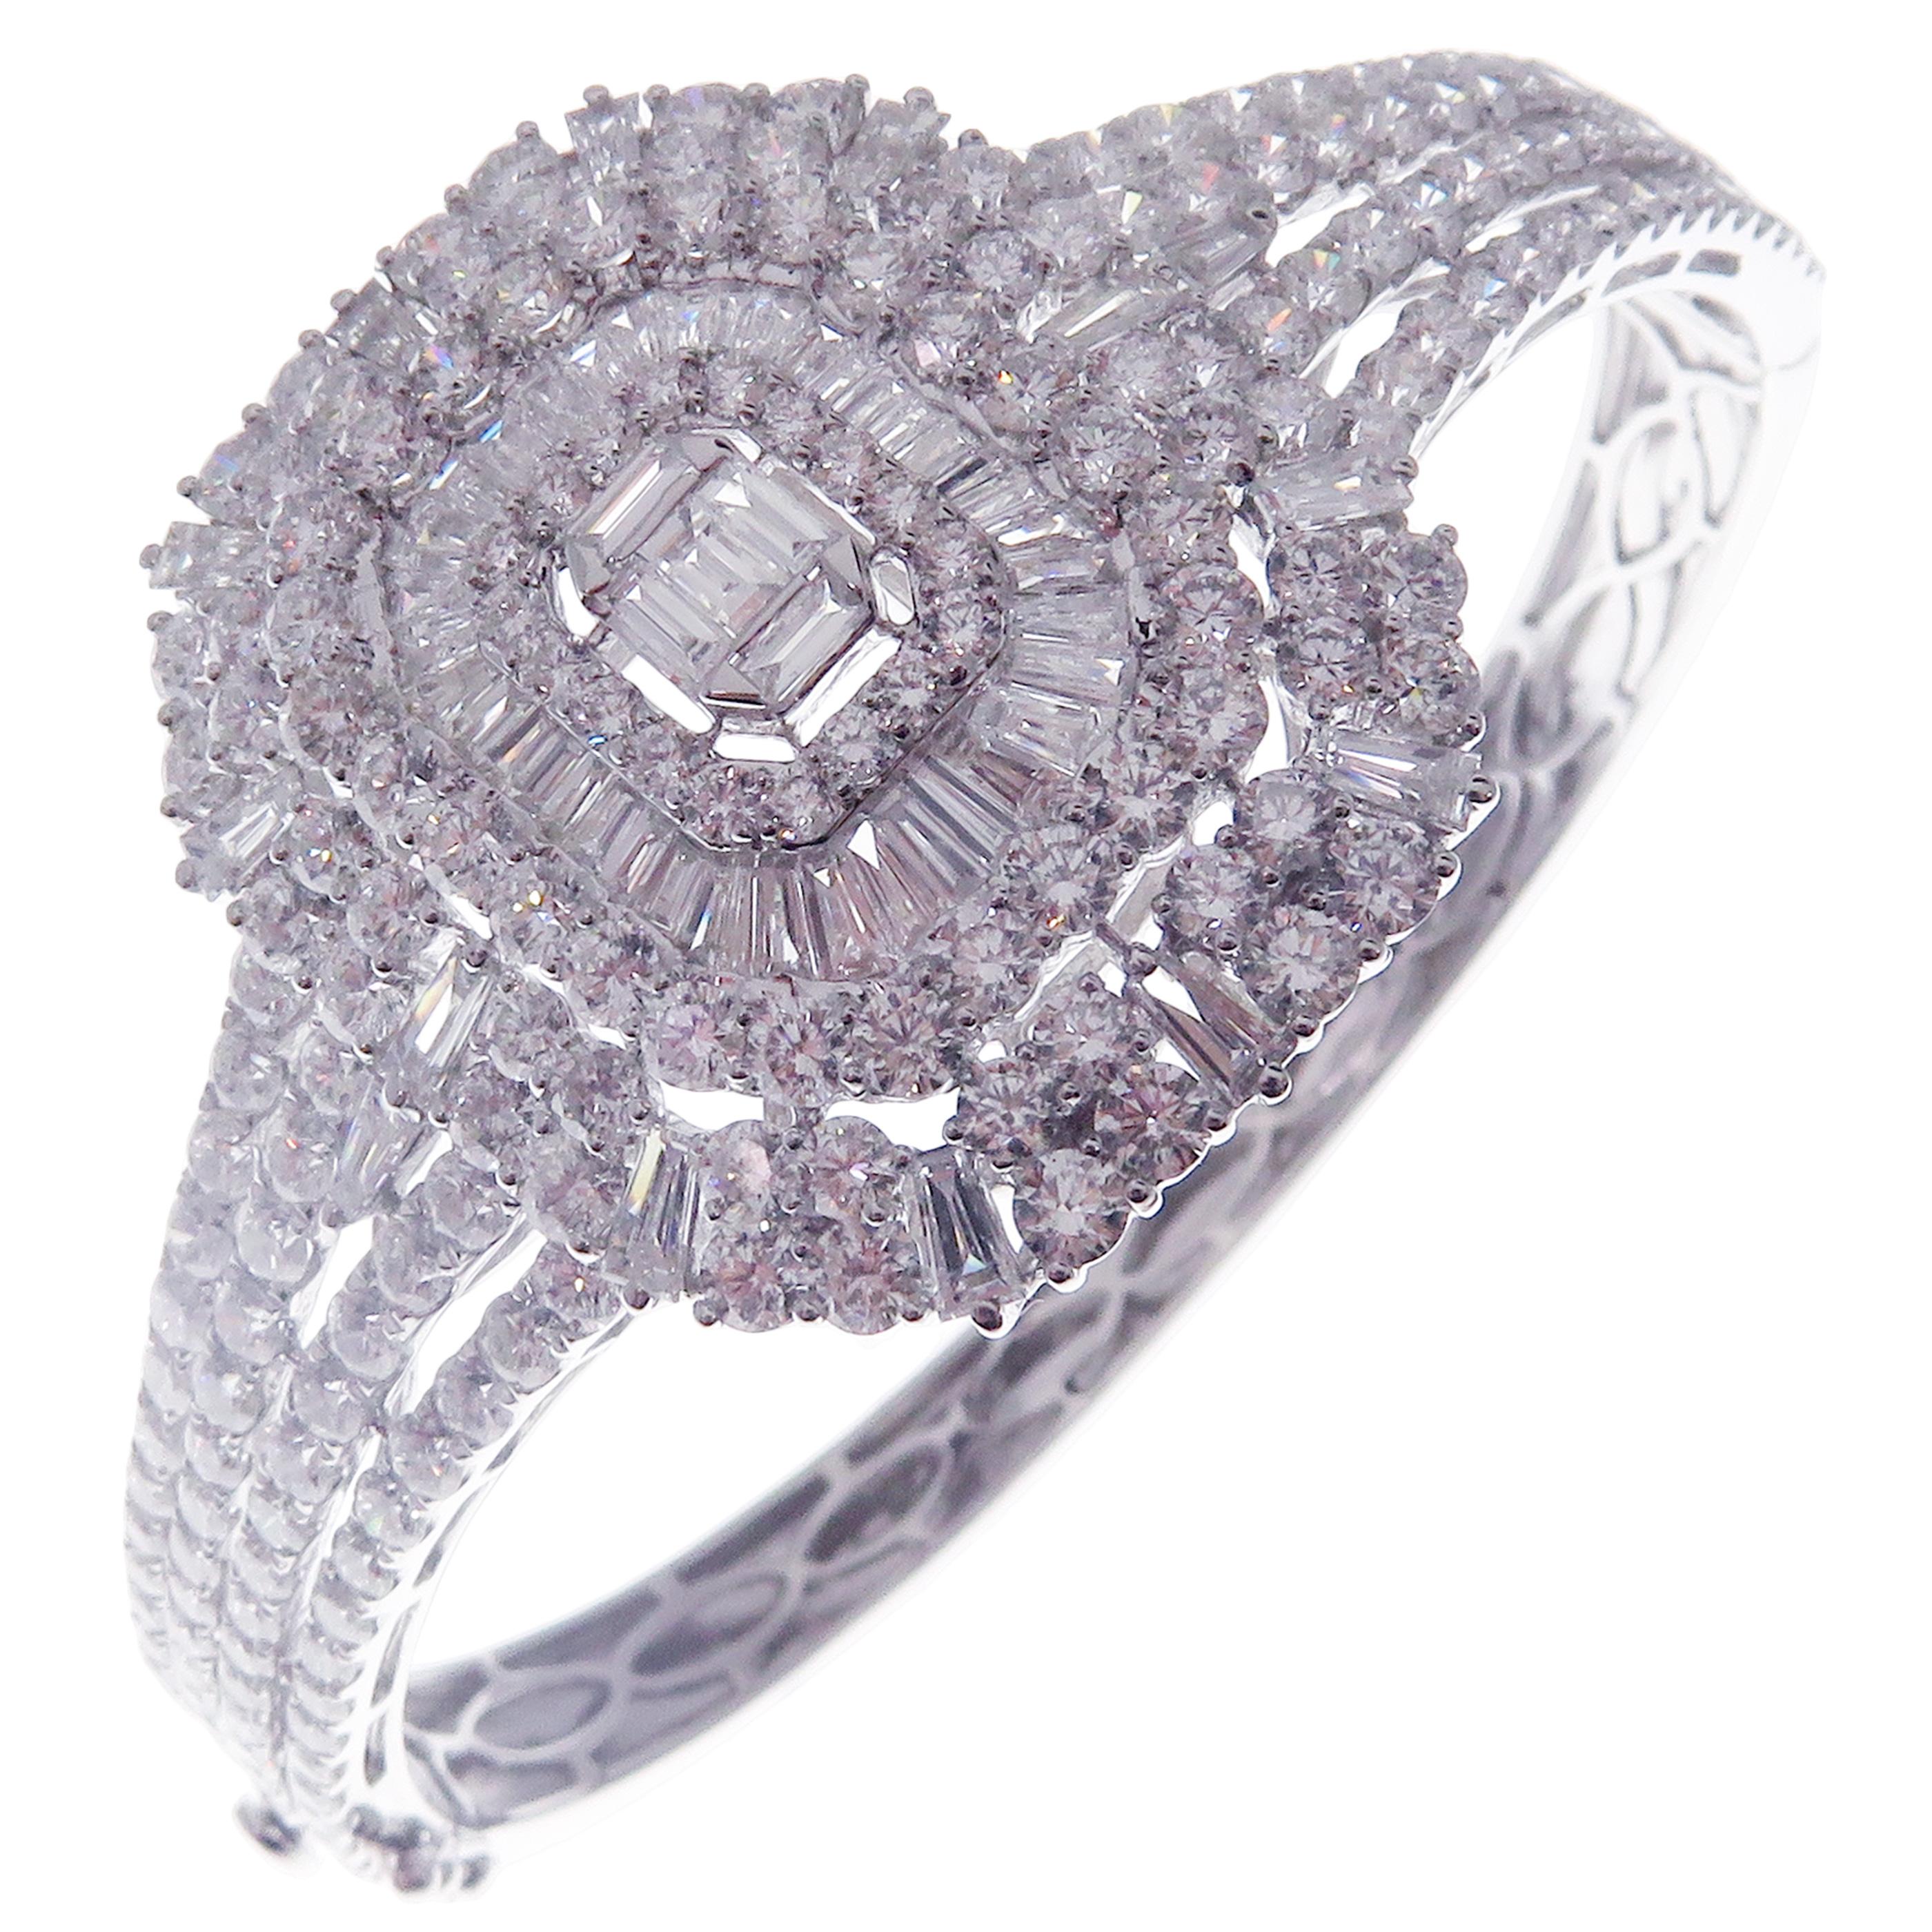 Ce bracelet moderne de forme rectangulaire avec diamants ronds et baguettes est réalisé en or blanc 18 carats.
Ce bracelet présente 220 diamants blancs ronds totalisant 9,78 carats et 58 diamants blancs baguette totalisant 2,15 carats.
VS-G Diamants